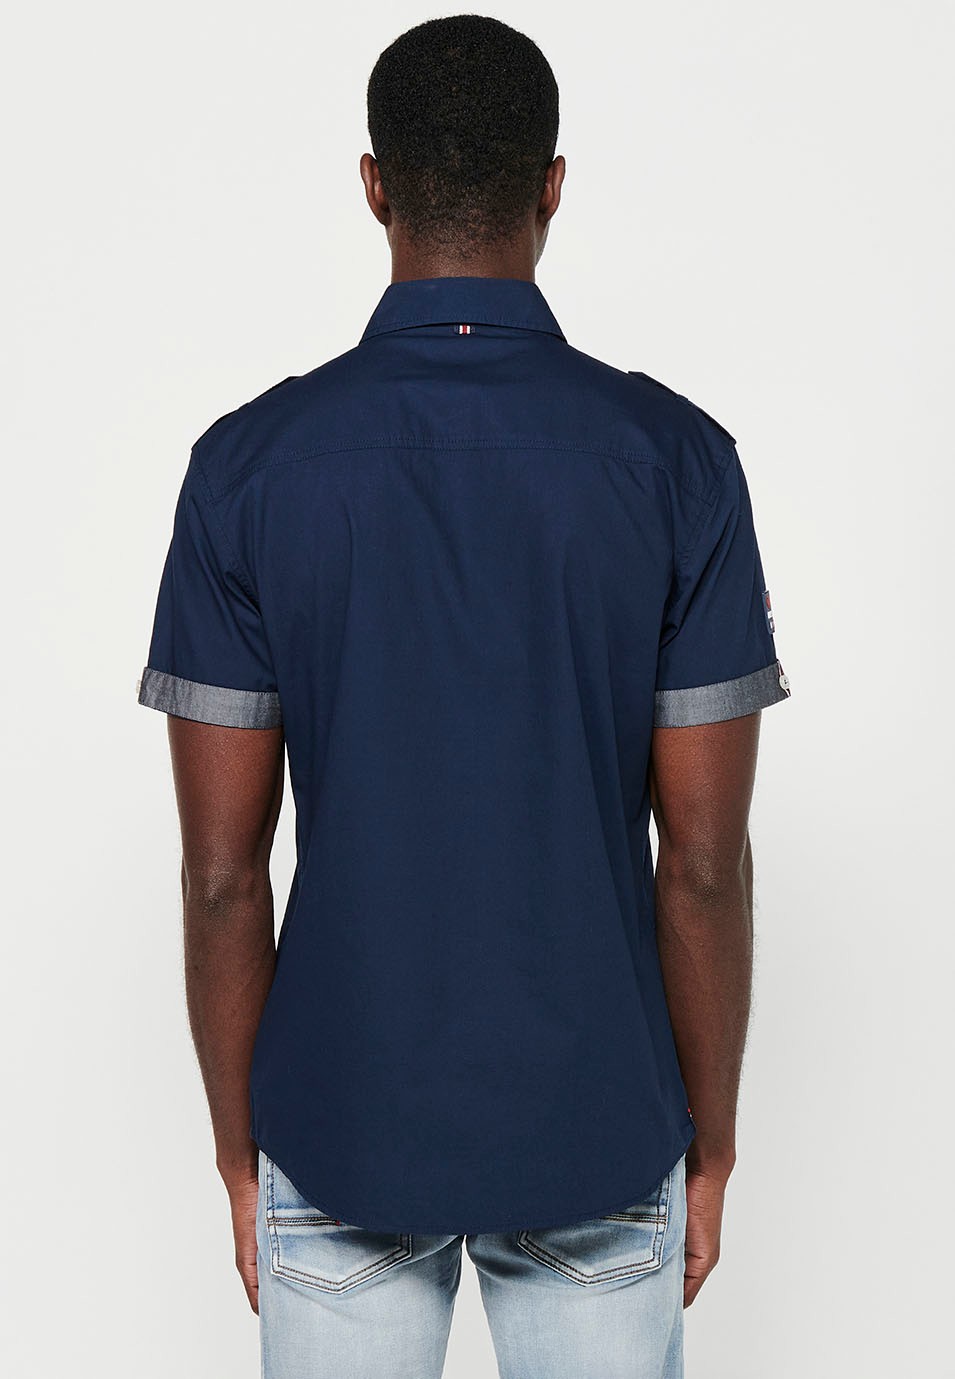 Cotton shirt, short sleeve, shoulder details, navy color for men 6